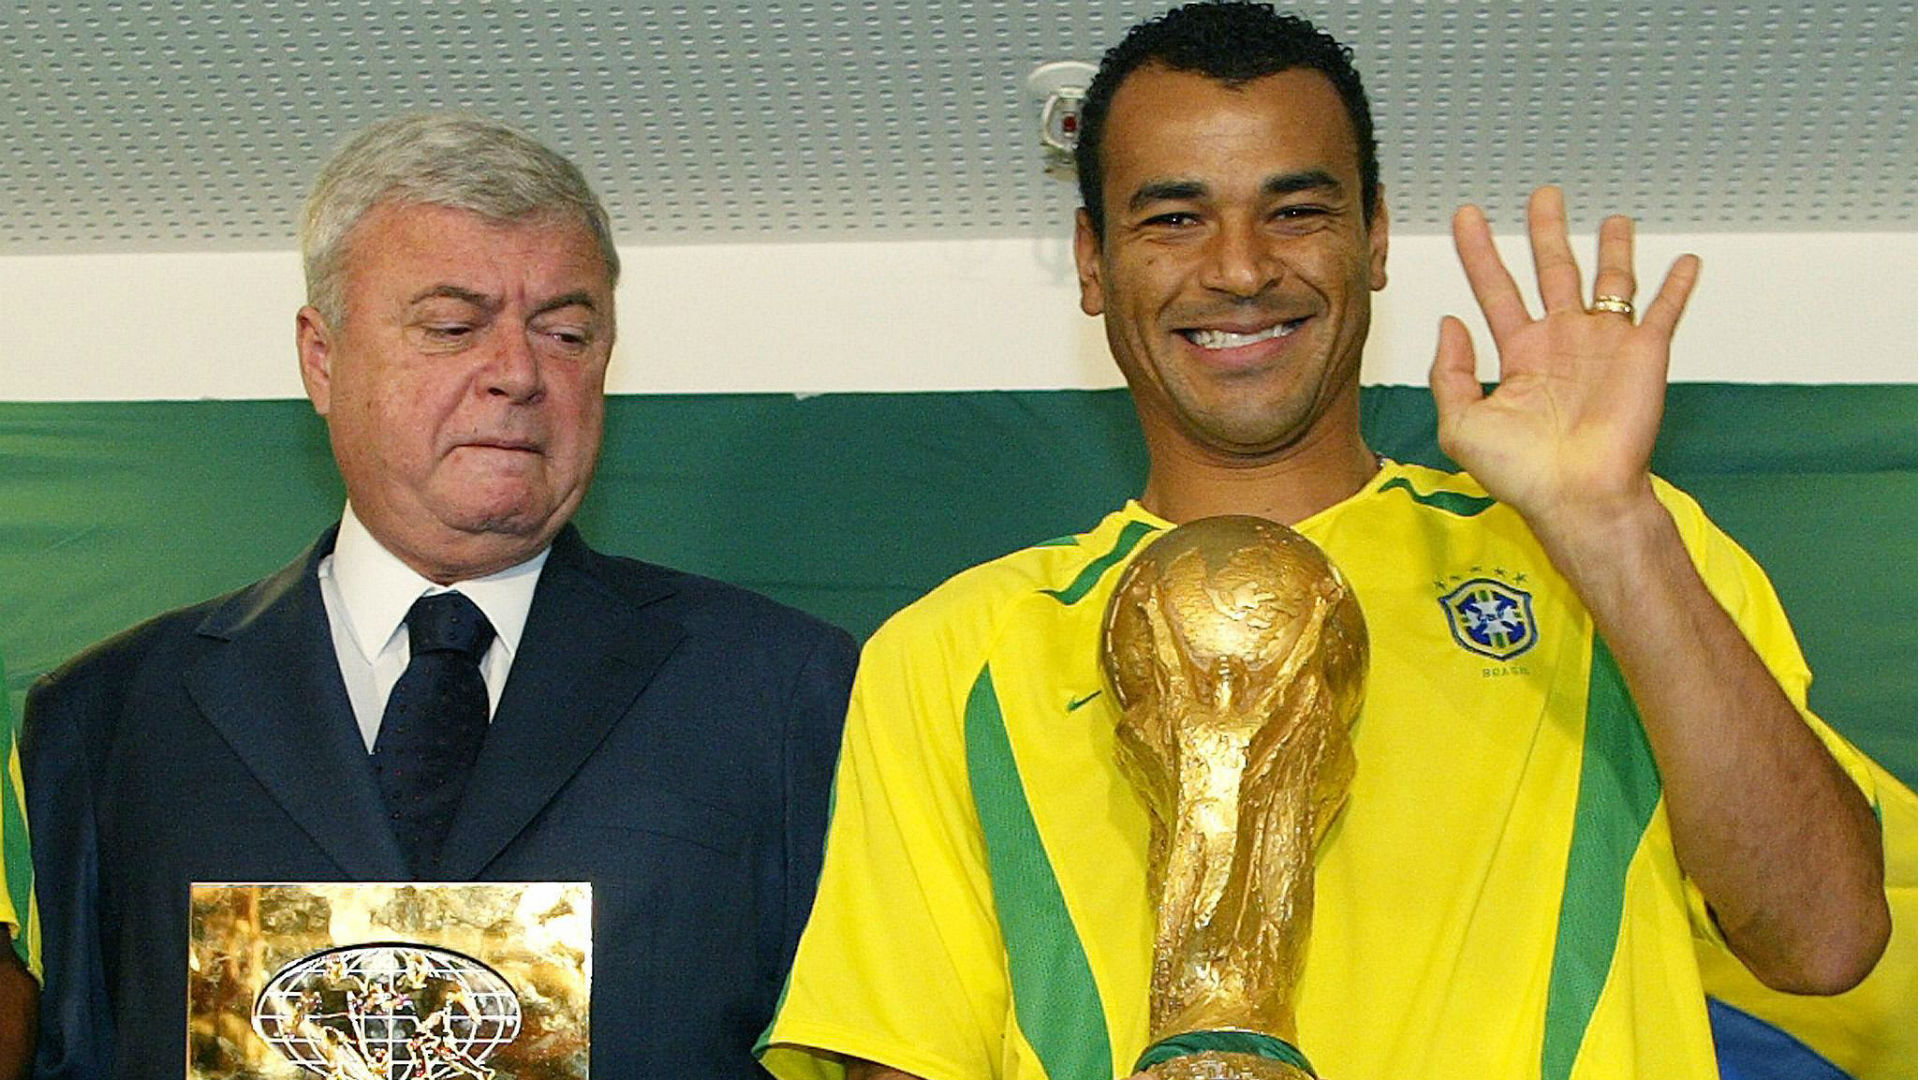 تاريخ كأس العالم | جميع أبطال وهدافي المونديال  Ricardo-teixeira-cafu-2002-brasil-selecao-30-06-2017_oksivi6xczvi1g169as57aq6r